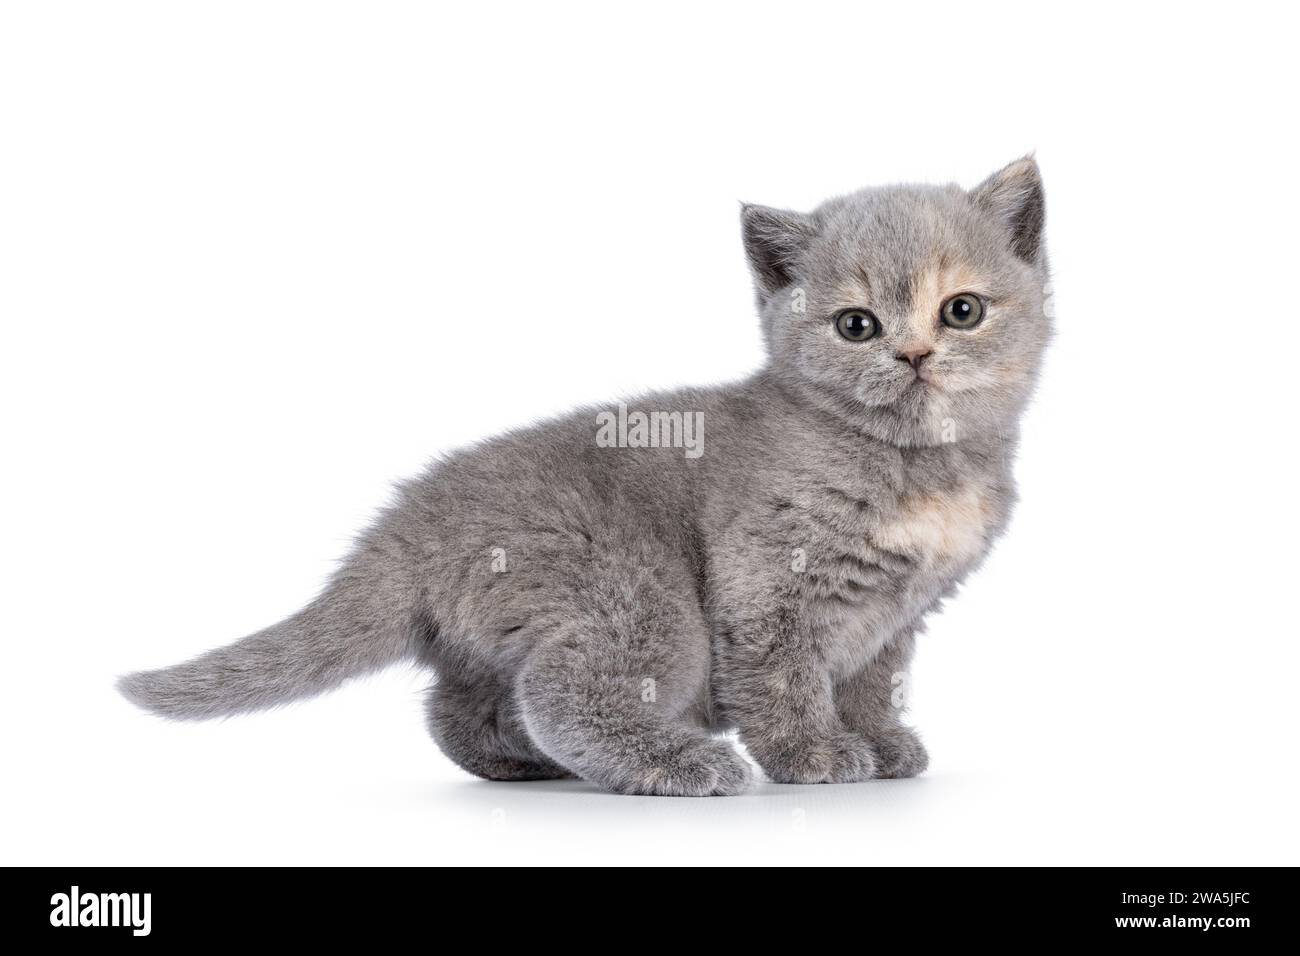 Süßes 6 Wochen altes britisches Kurzhaar-Katzenkätzchen, seitlich stehend. Blick direkt auf die Kamera. Isoliert auf weiß. Stockfoto